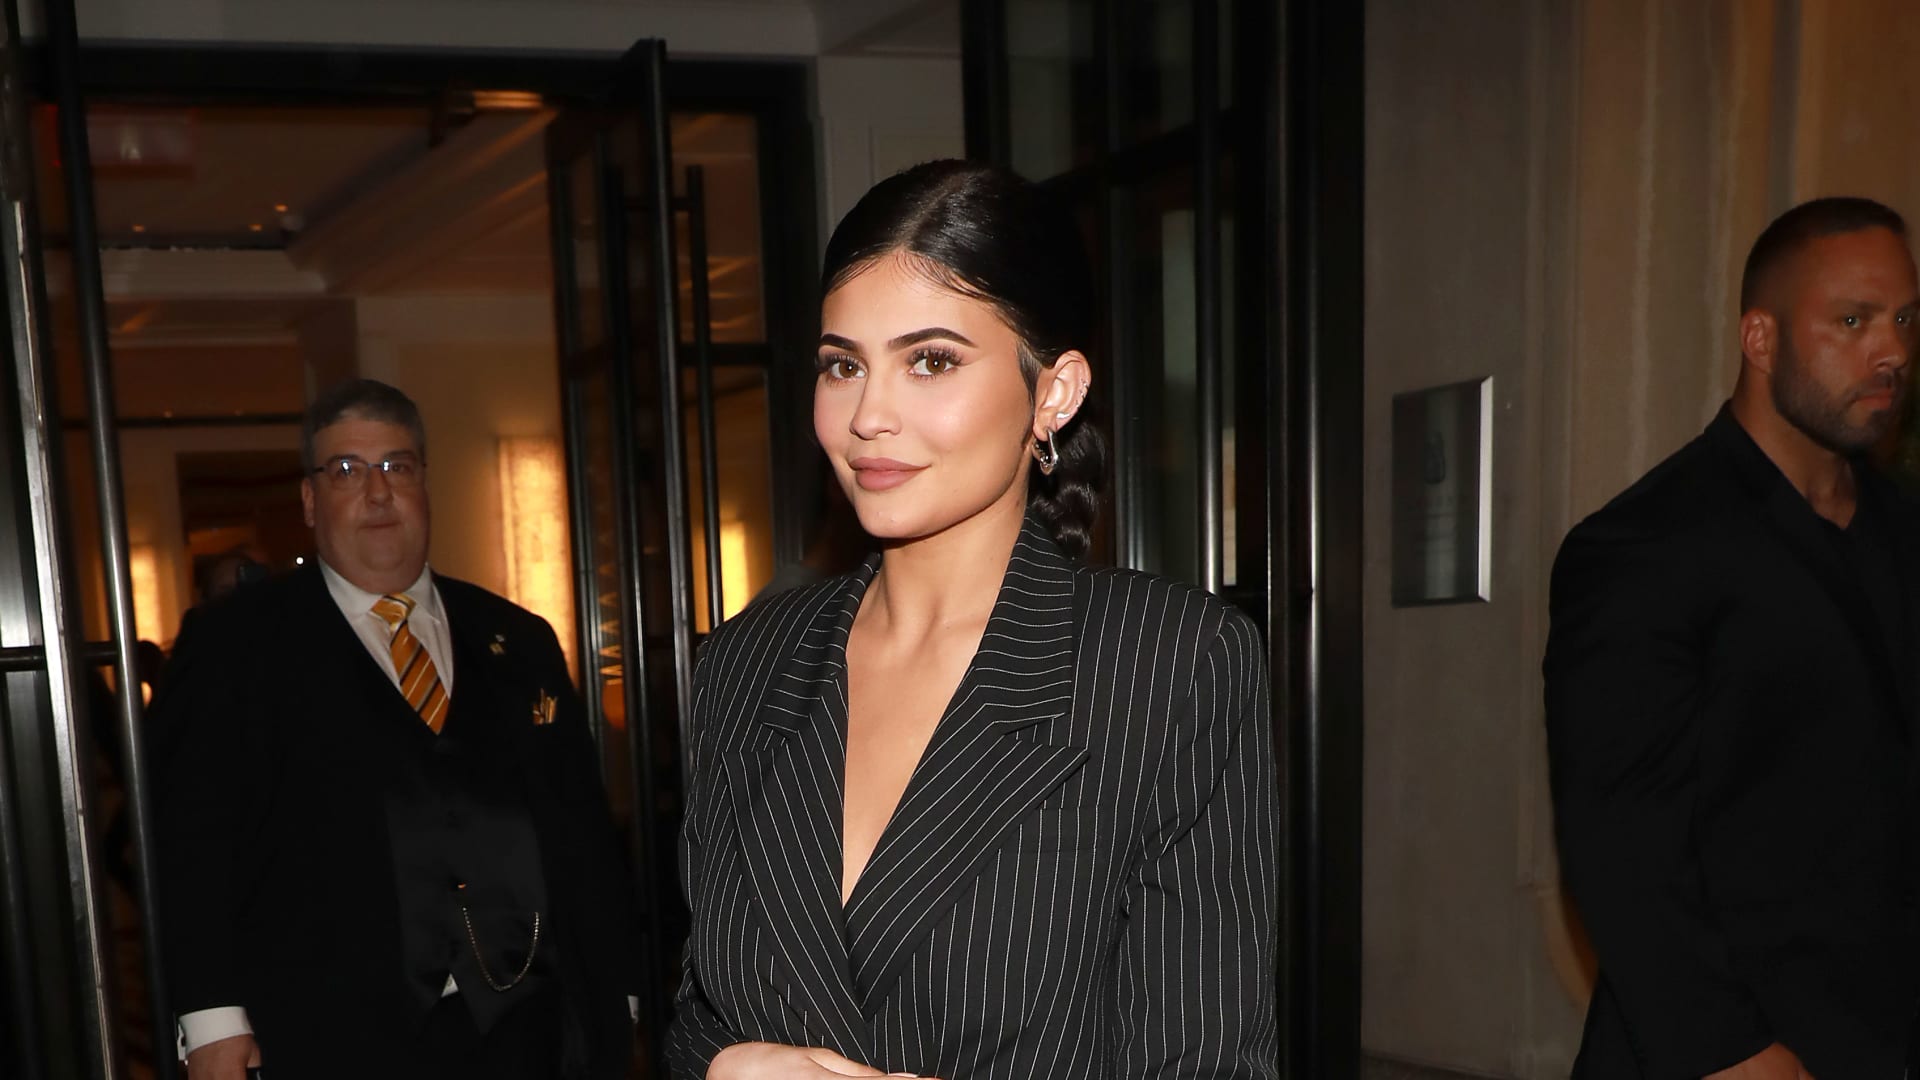 Kylie Jenner and Kim Kardashian urge Instagram to stop copying TikTok